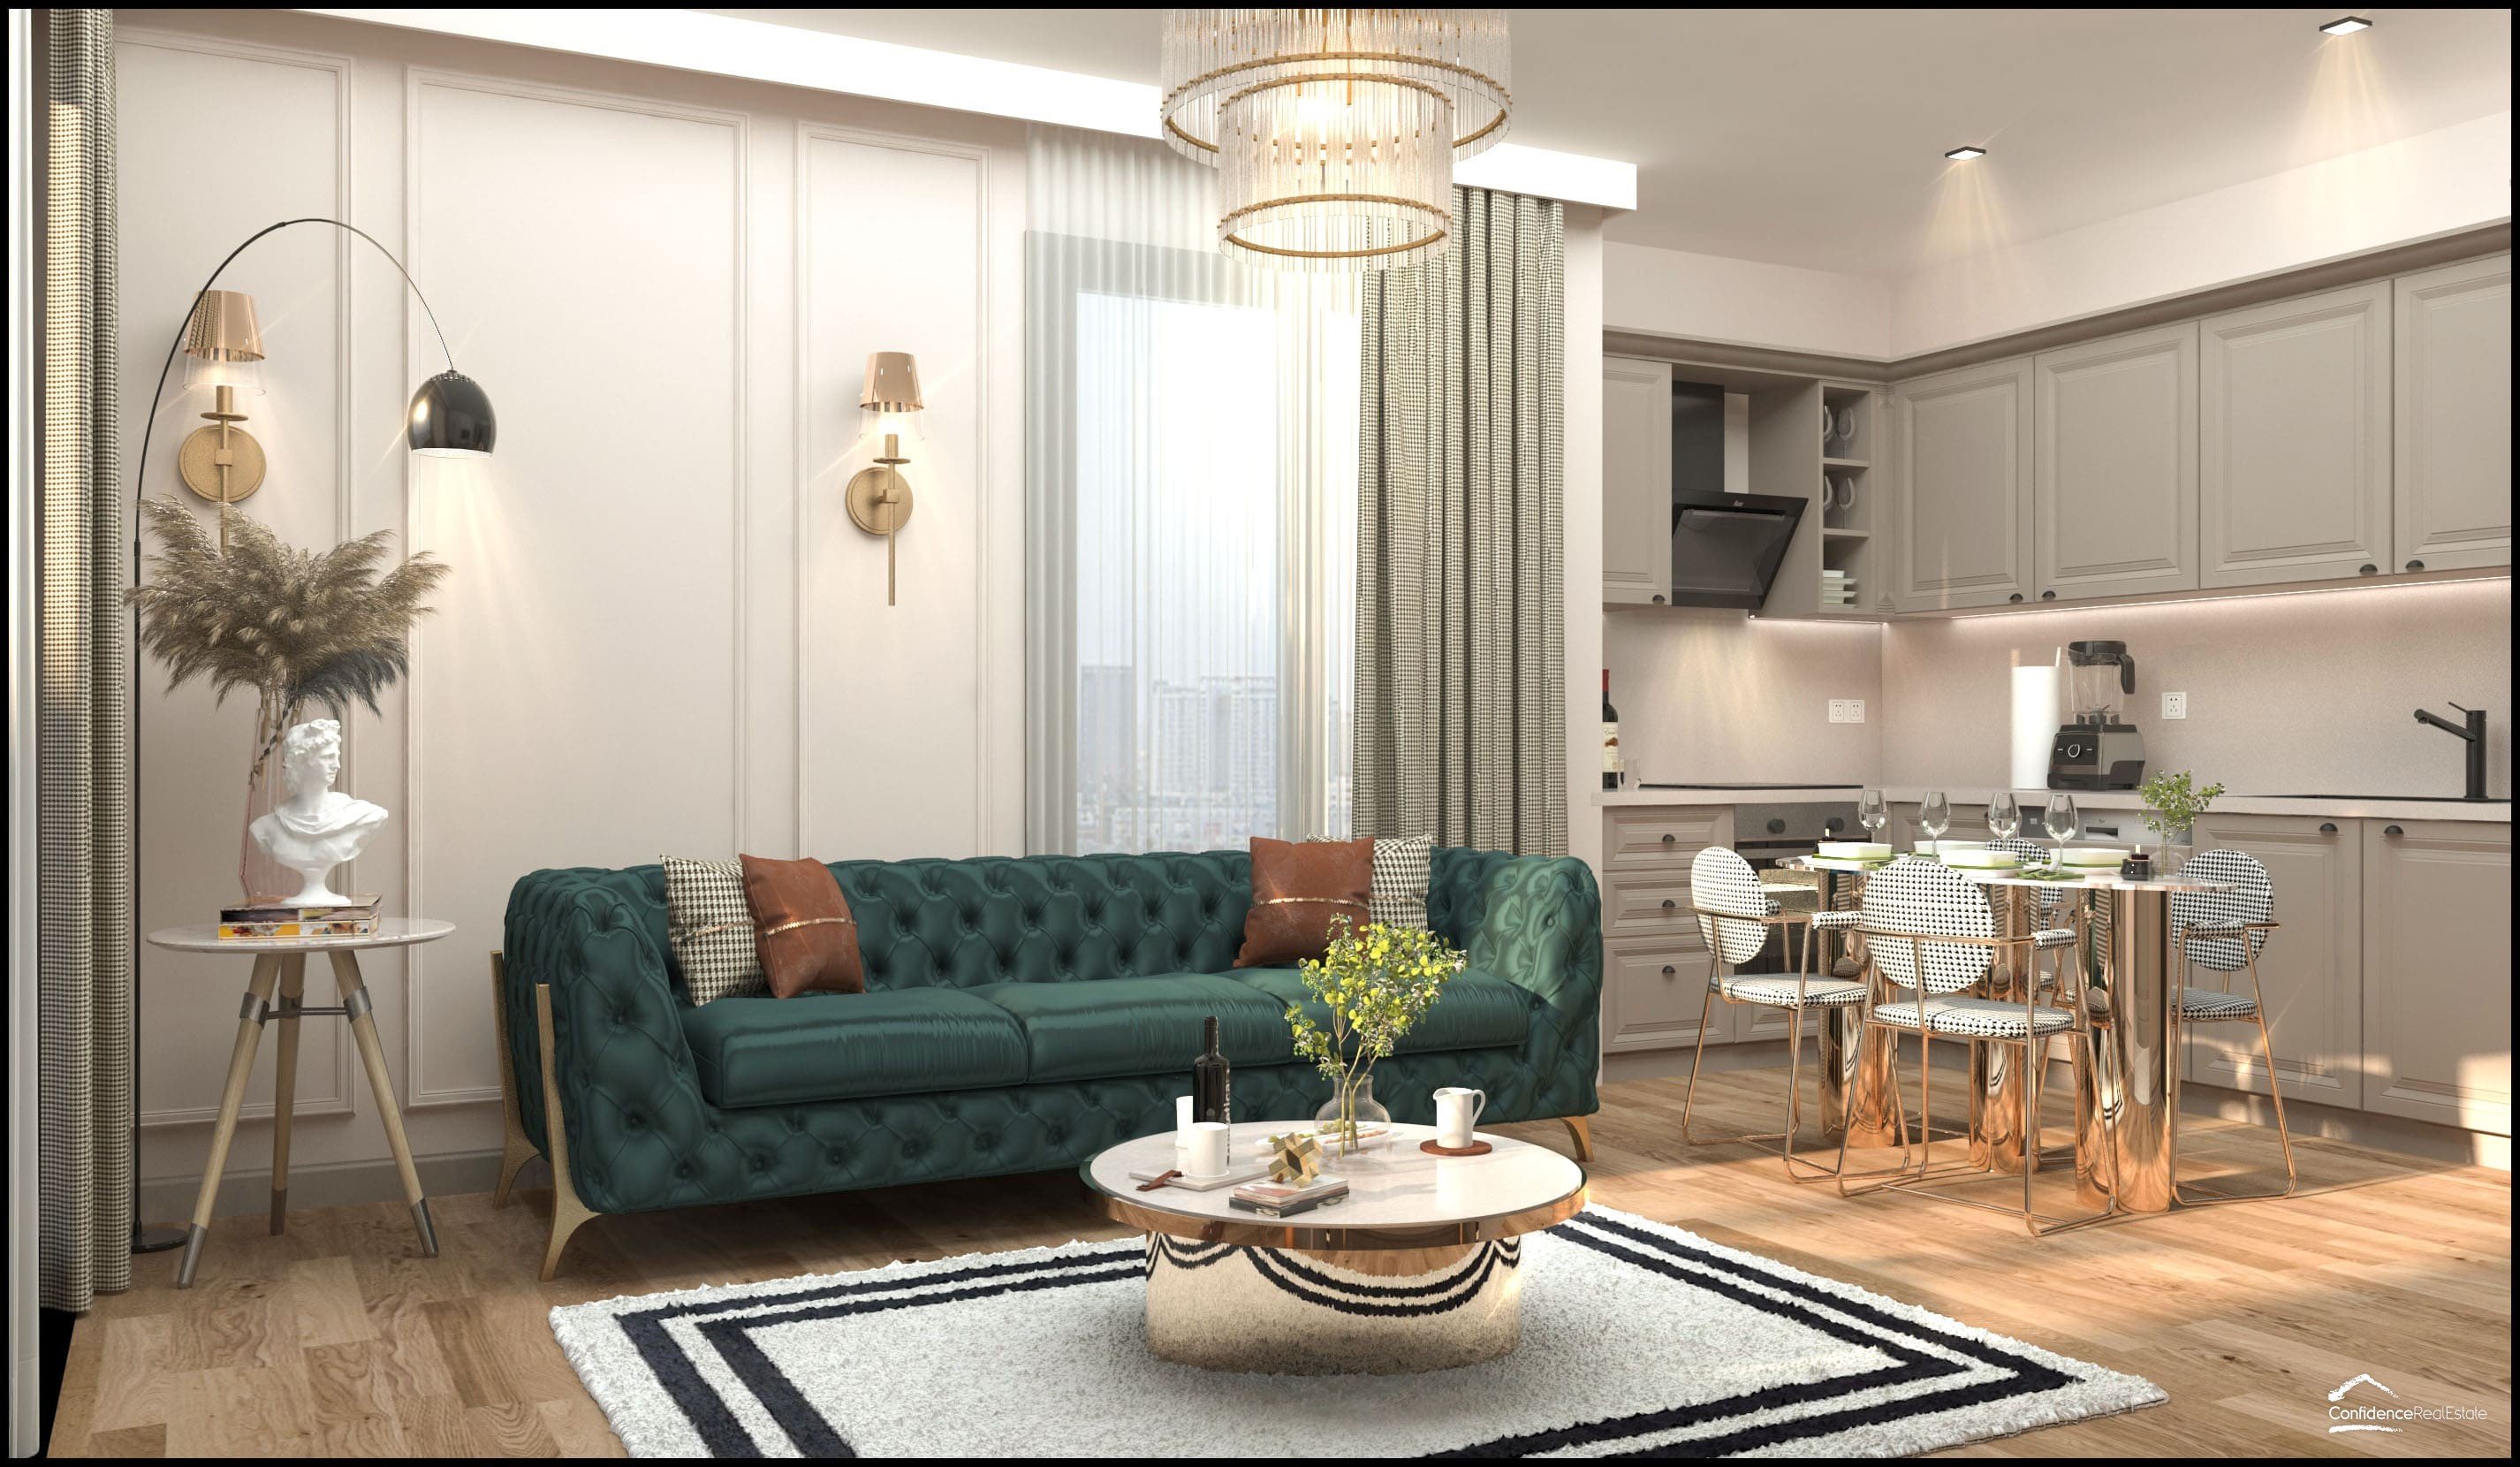 Popüler tatil beldesi Mersin'de modern apartman kompleksi